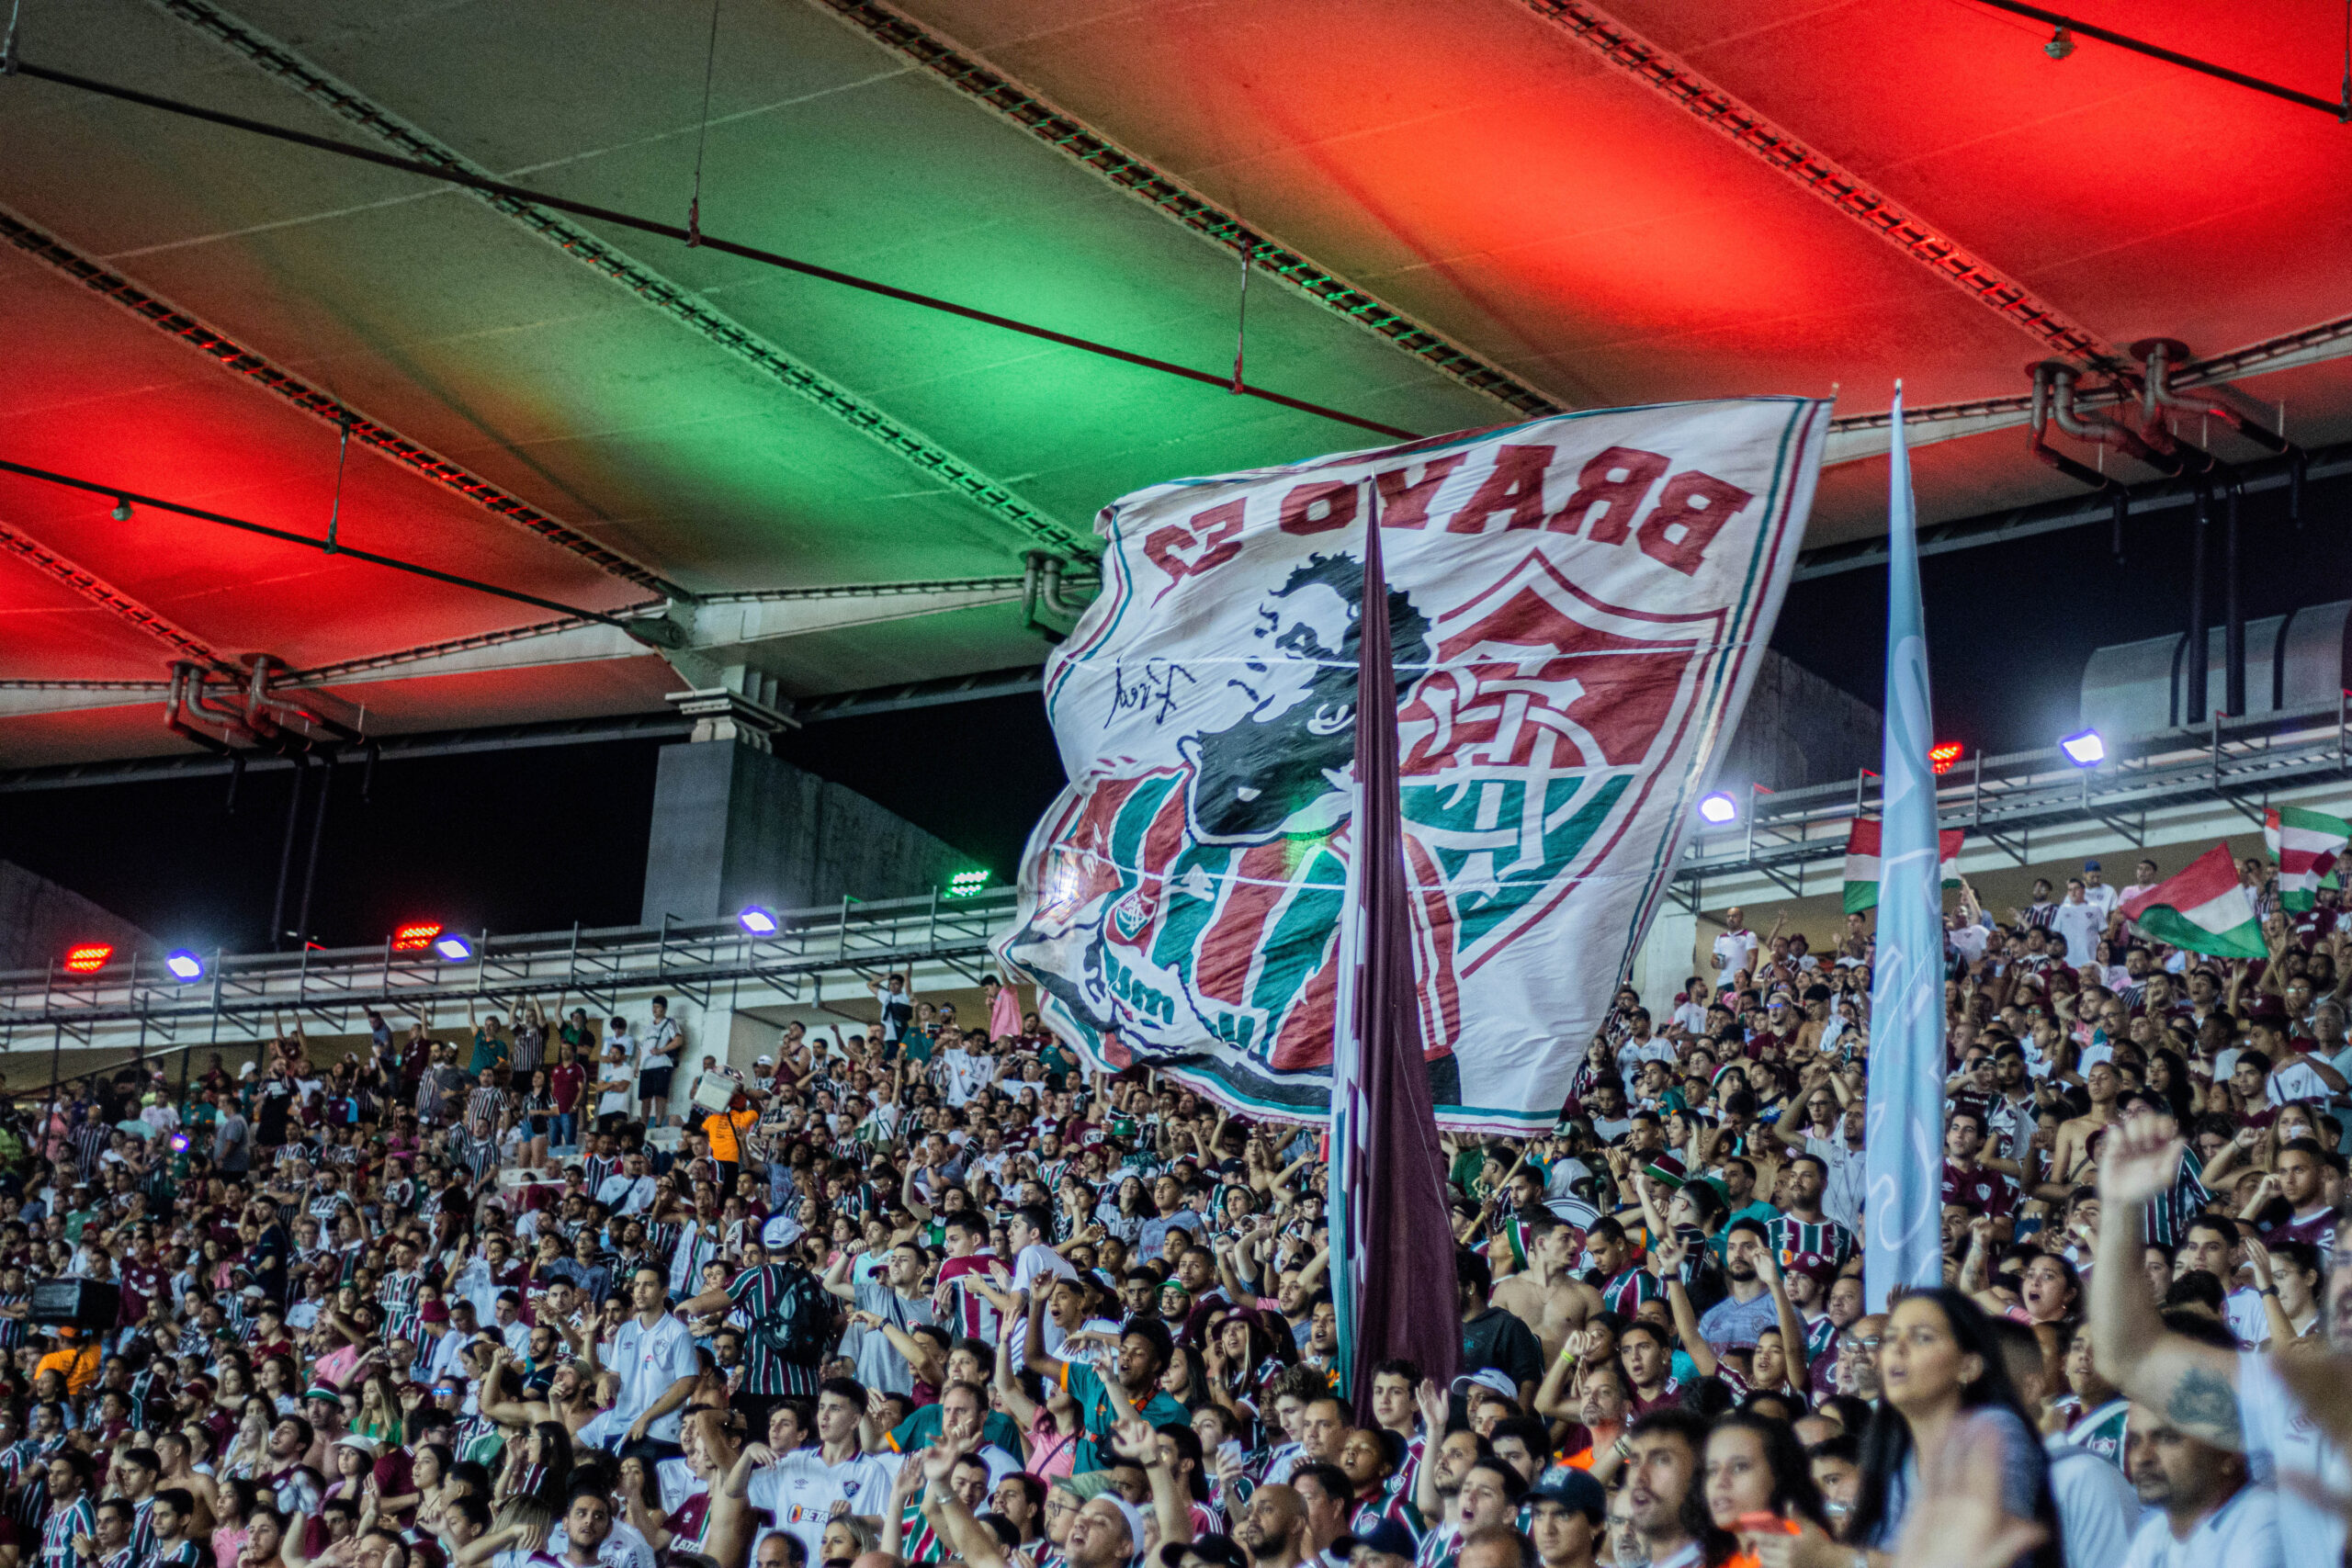 Clássico dos Gigantes: Mais de 21 mil ingressos para Fluminense x Vasco da Gama